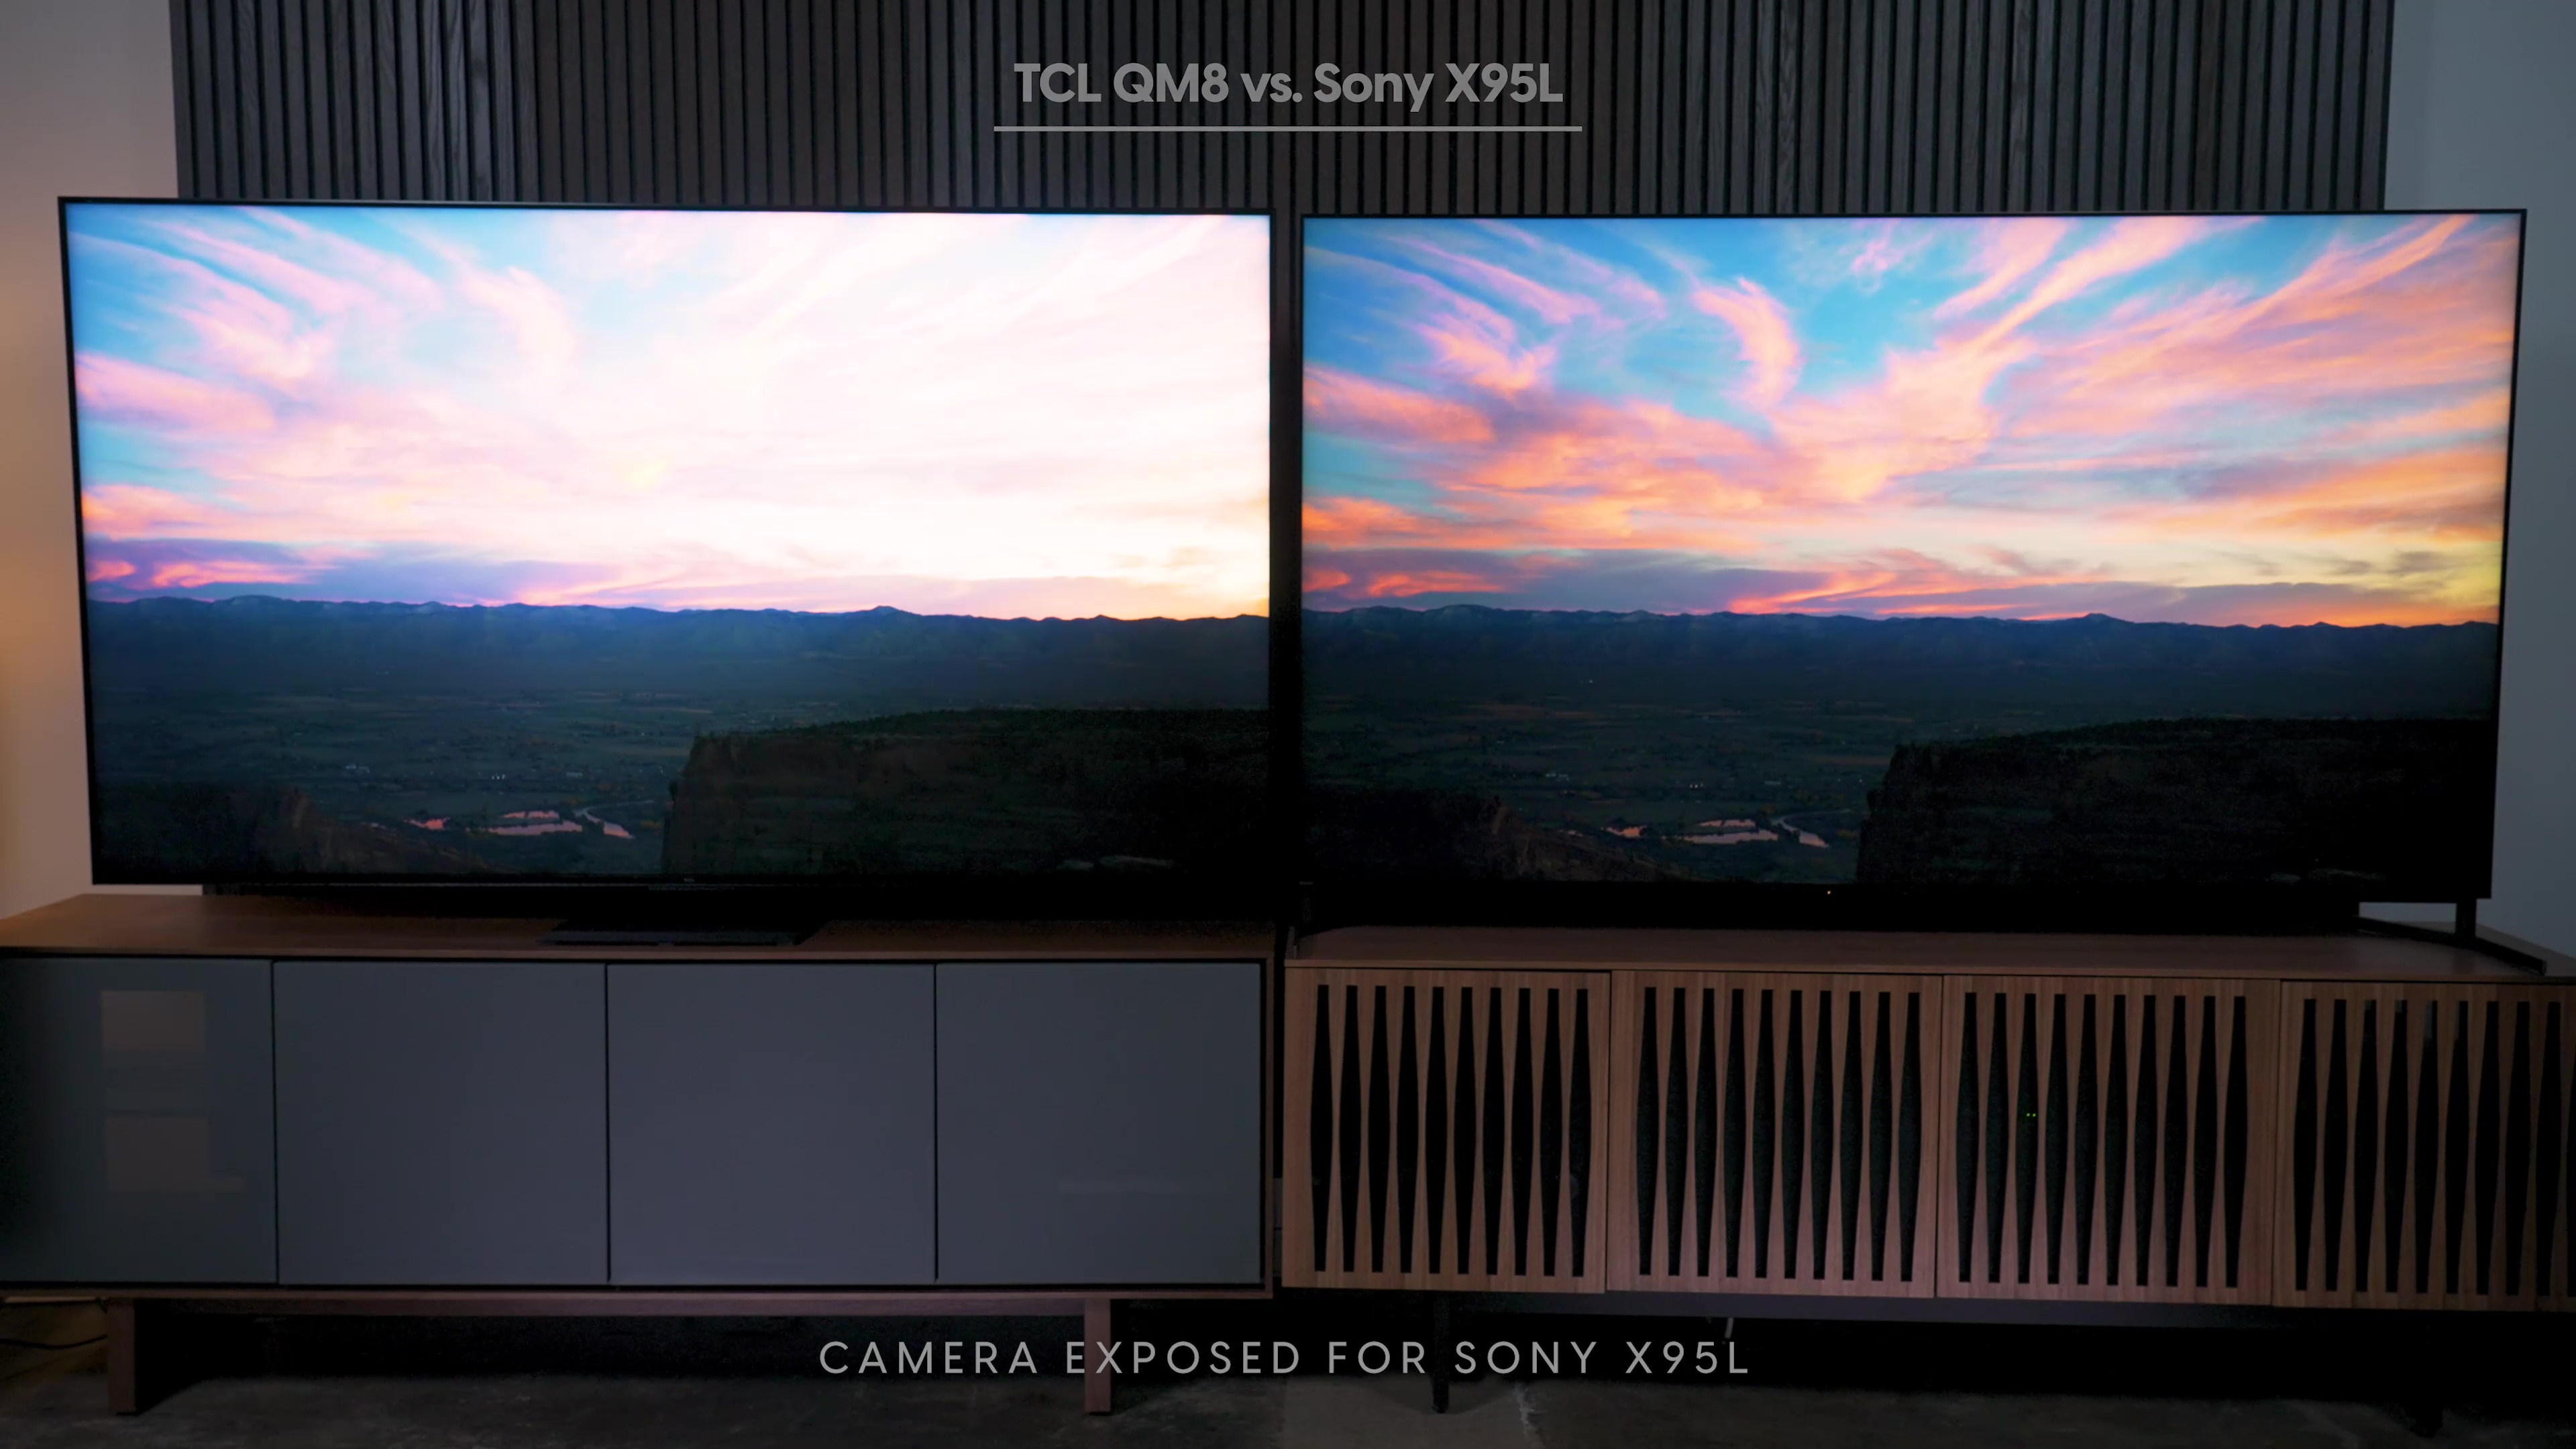 Comparación lado a lado de una puesta de sol en un Sony Bravia X95L vs TCL QM8.